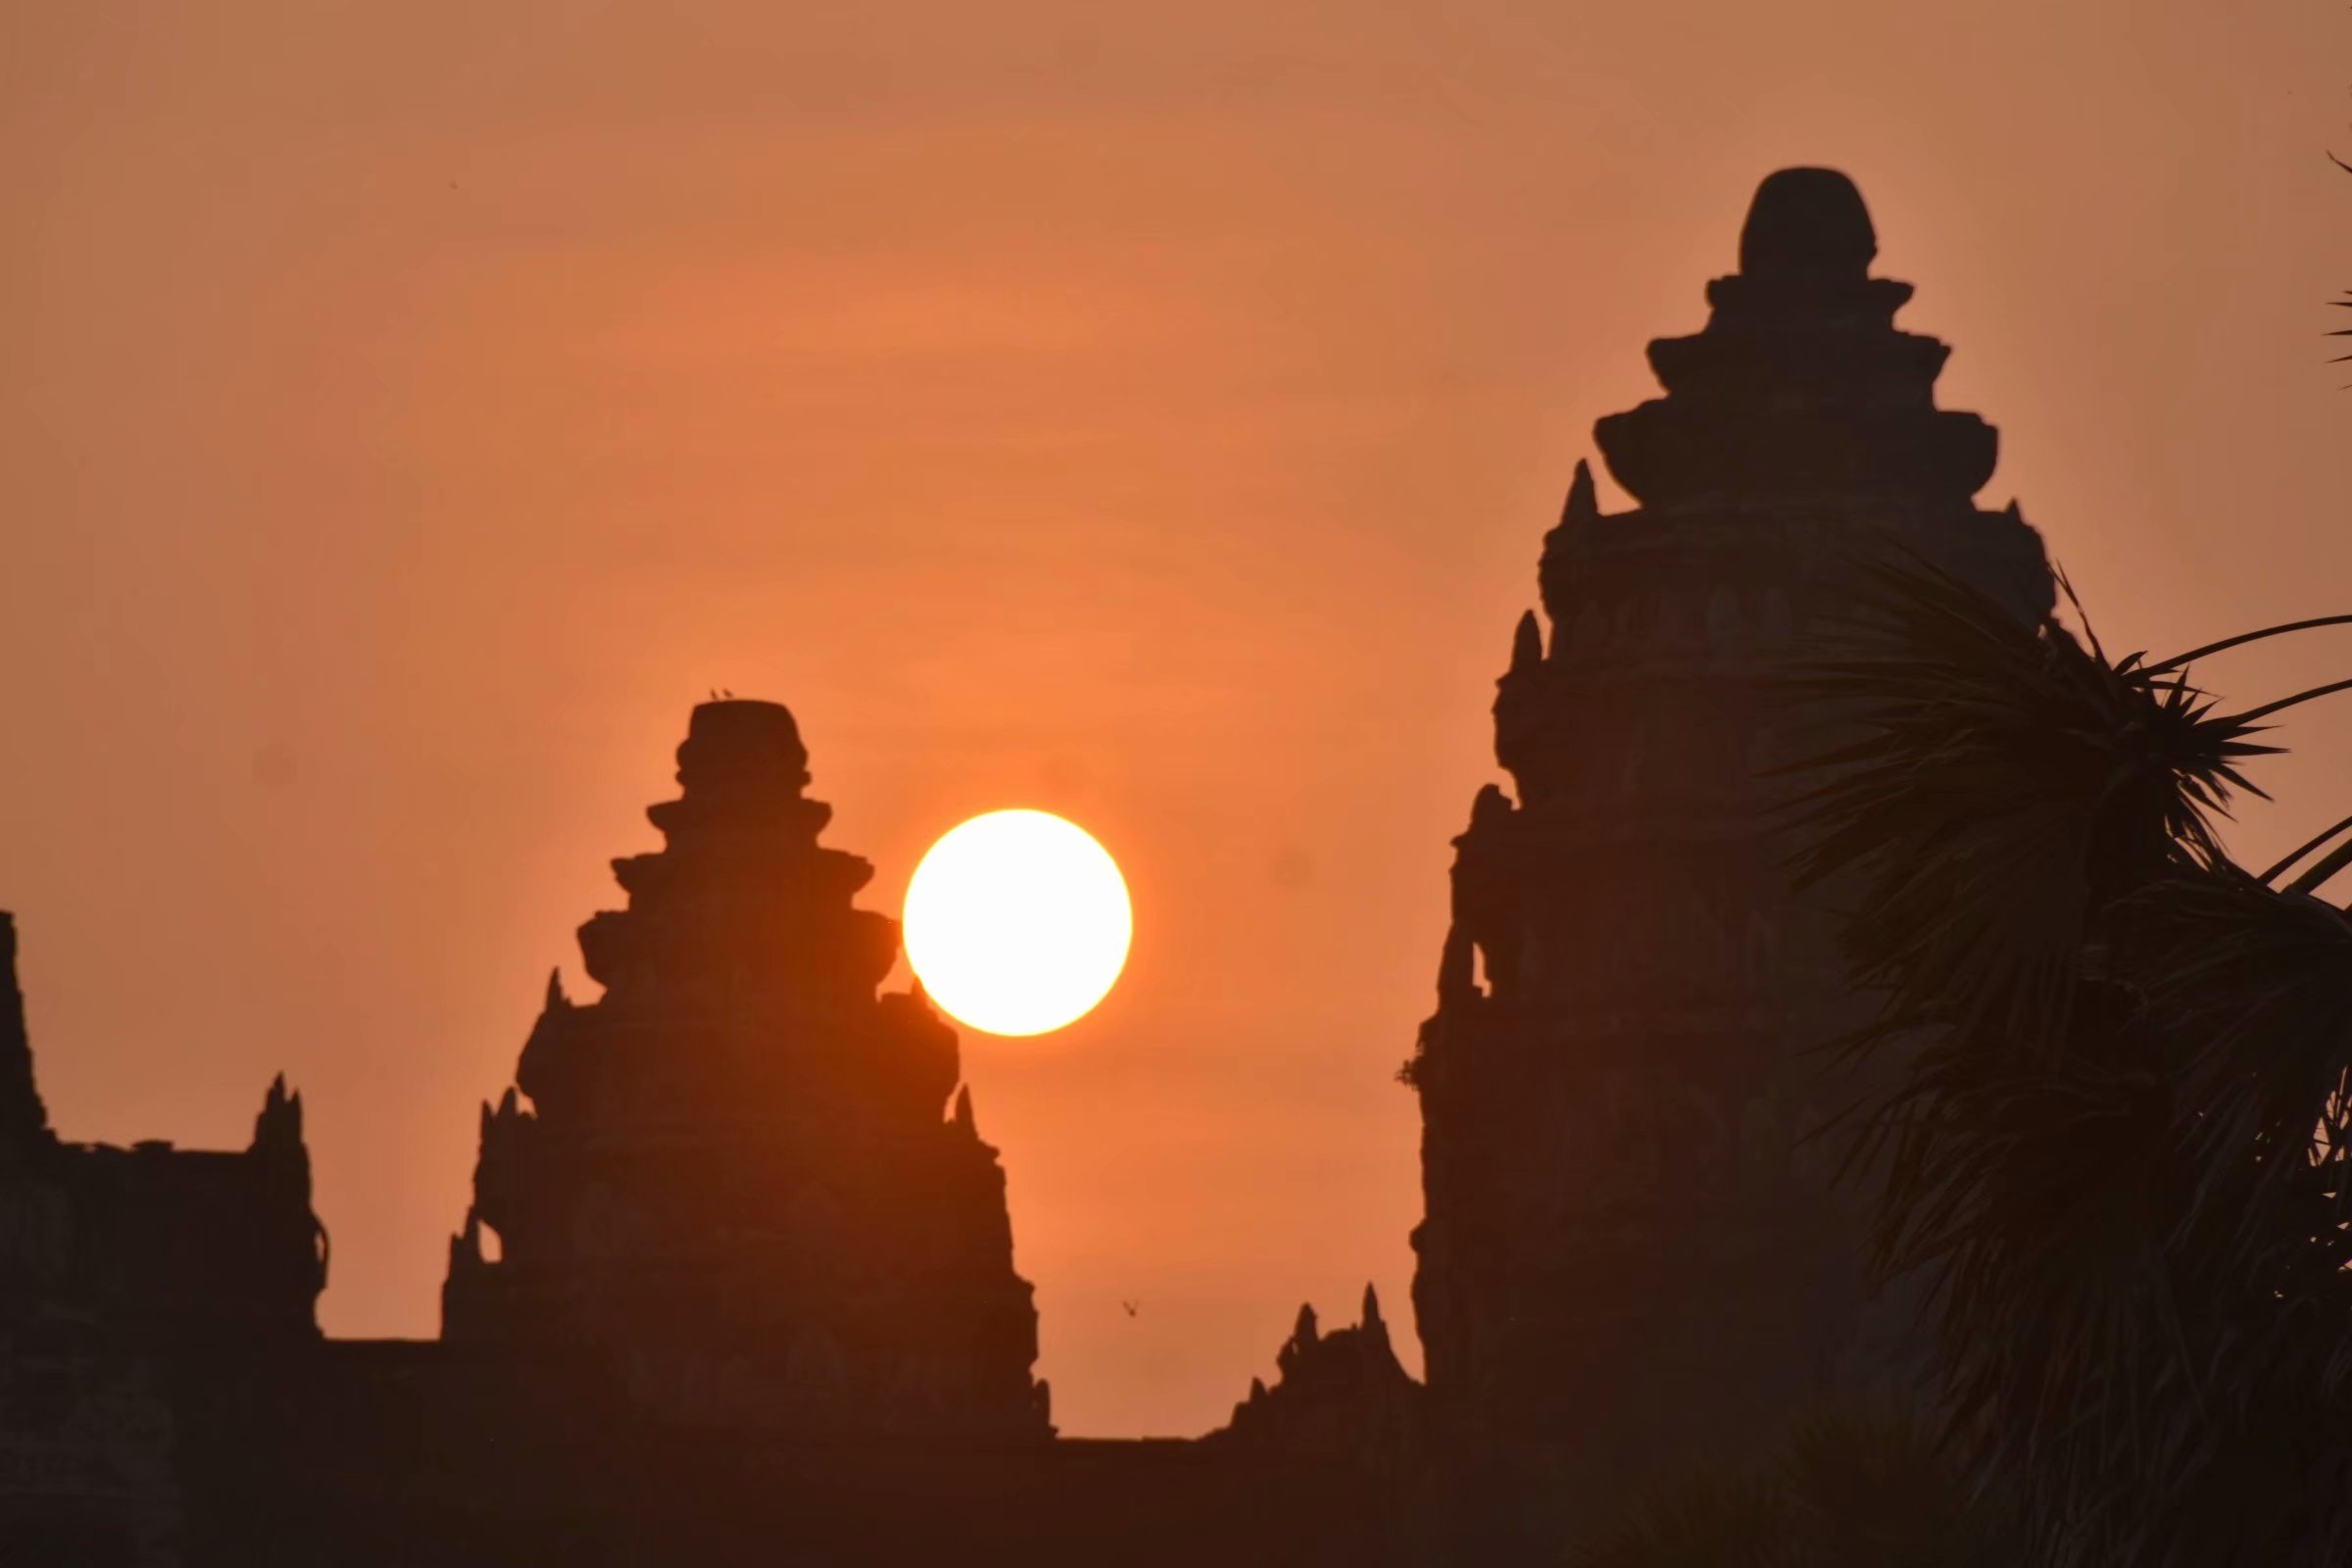 这样的柬埔寨你去干嘛吴哥寺日出忽悠了多少人